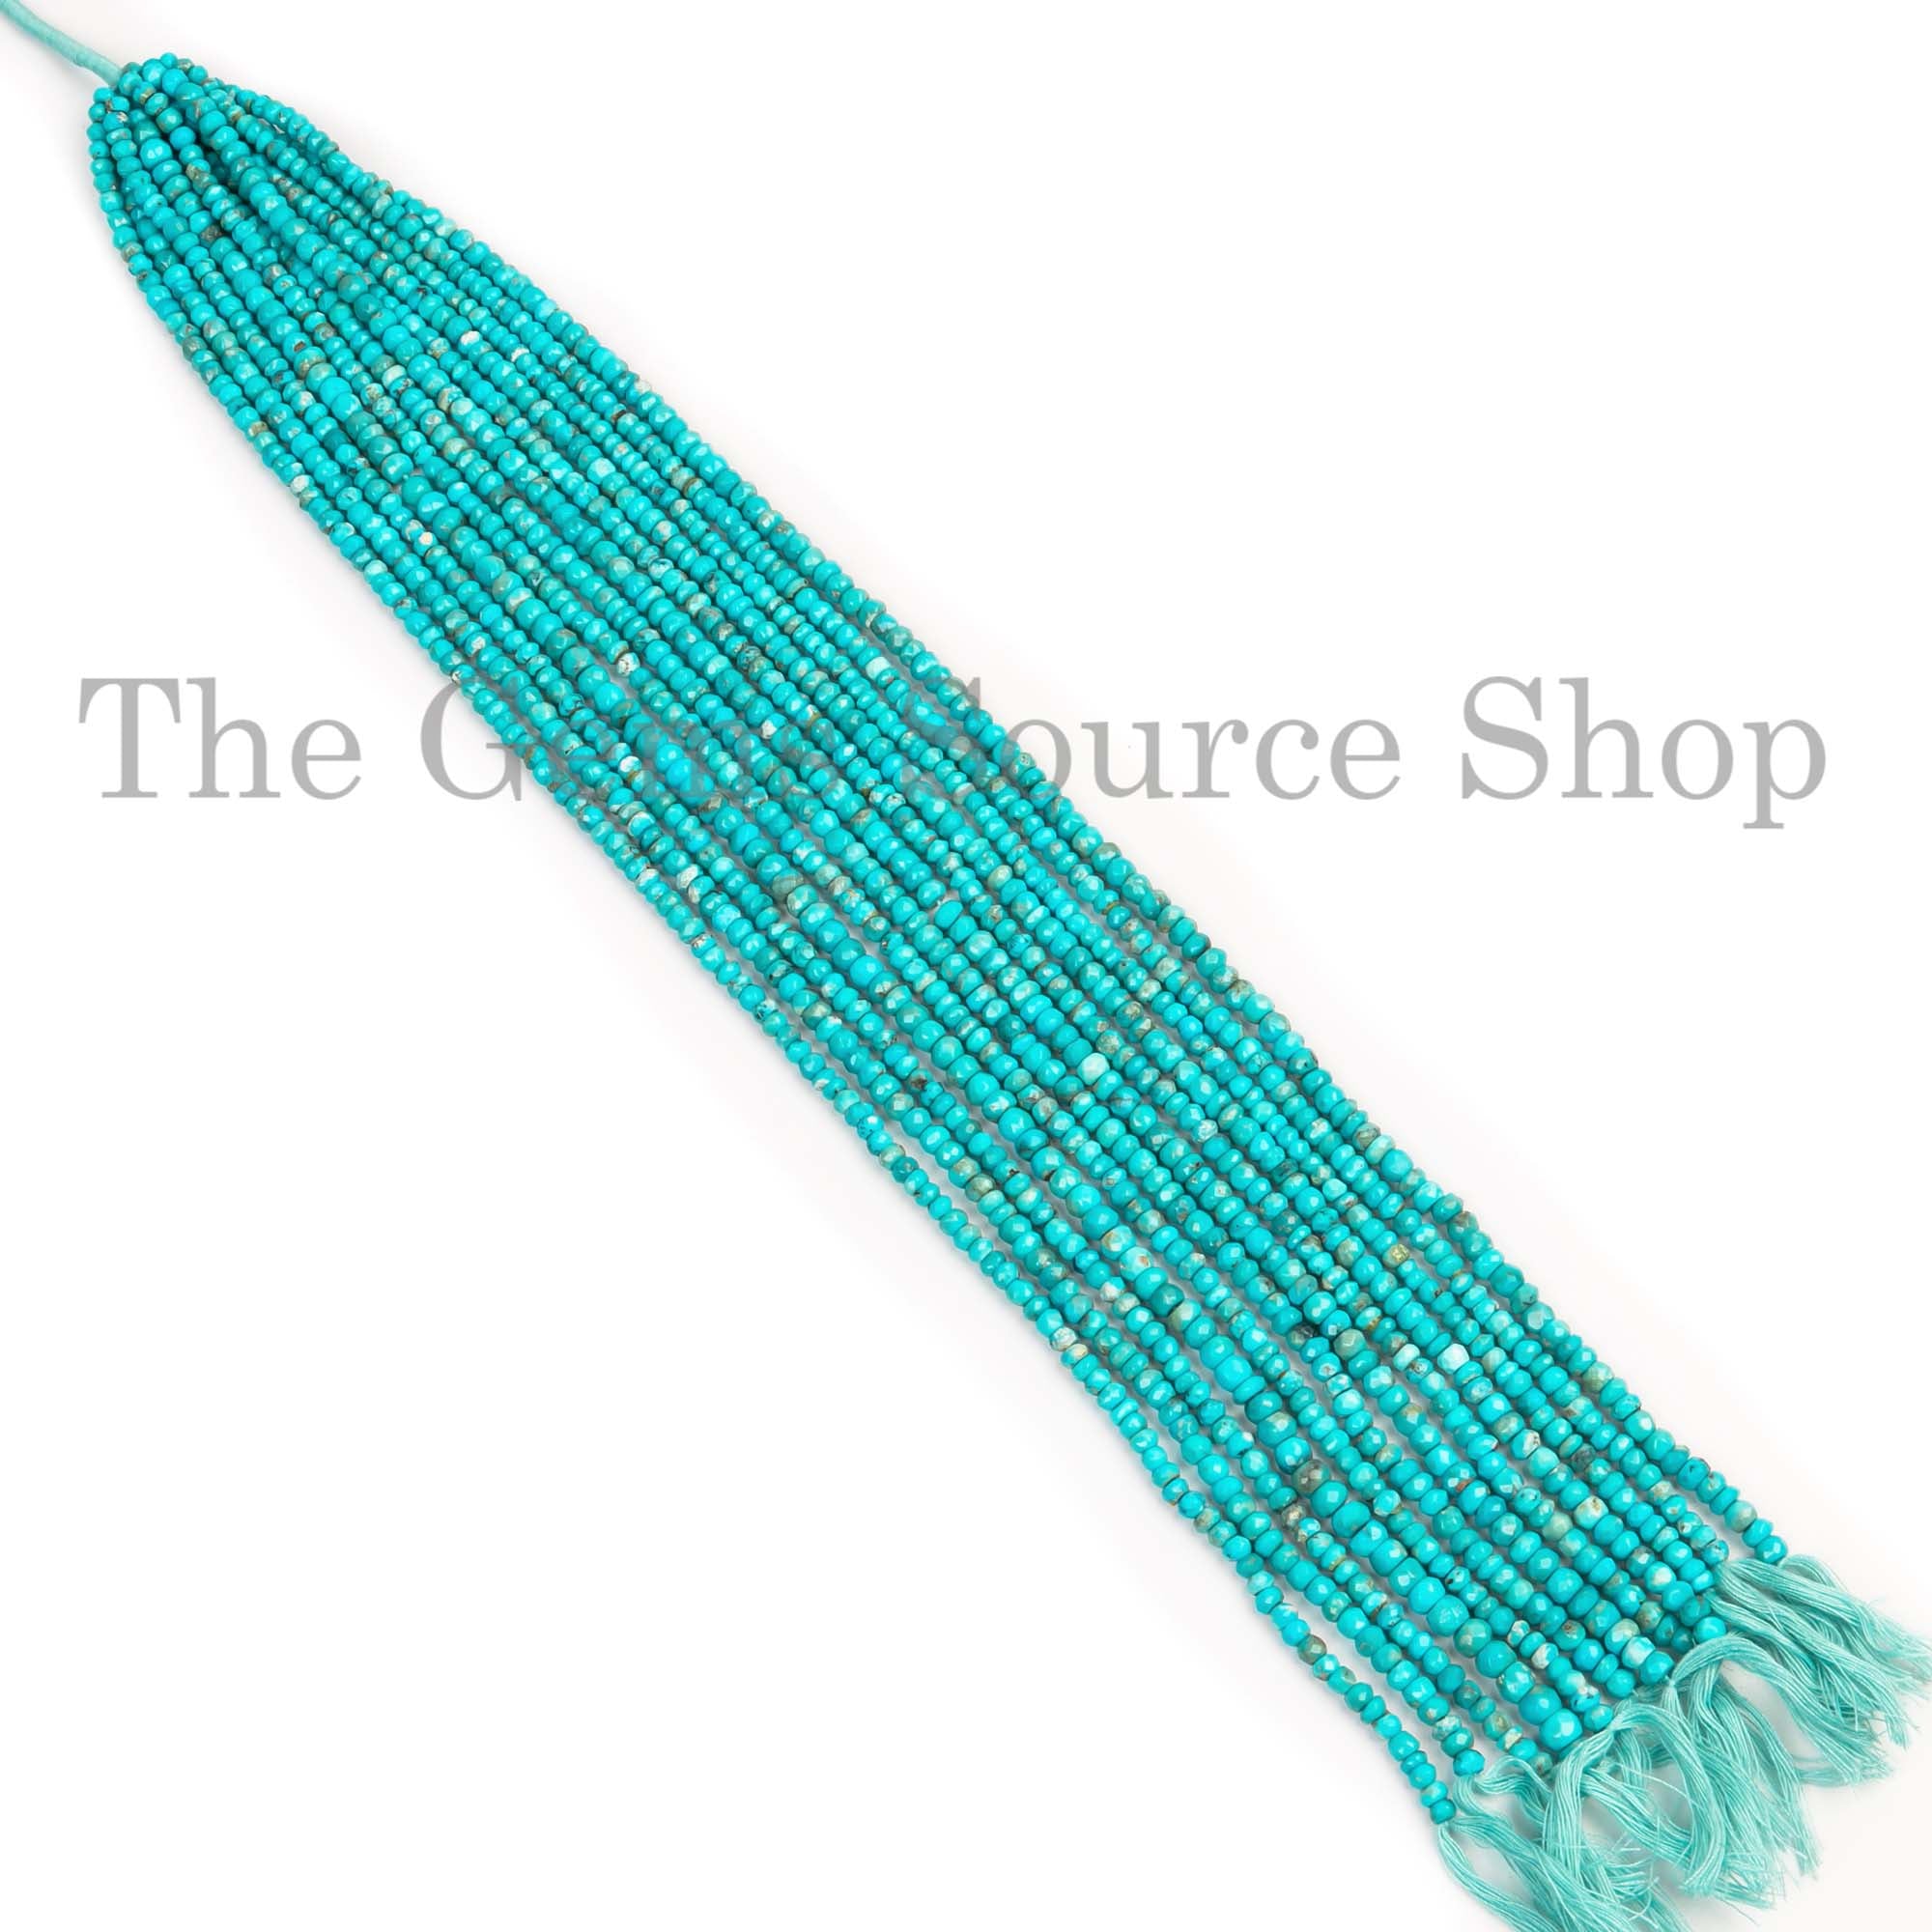 Sleeping Beauty Turquoise Beads, Turquoise Faceted Beads, Turquoise Rondelle Shape Beads, Wholesale Beads